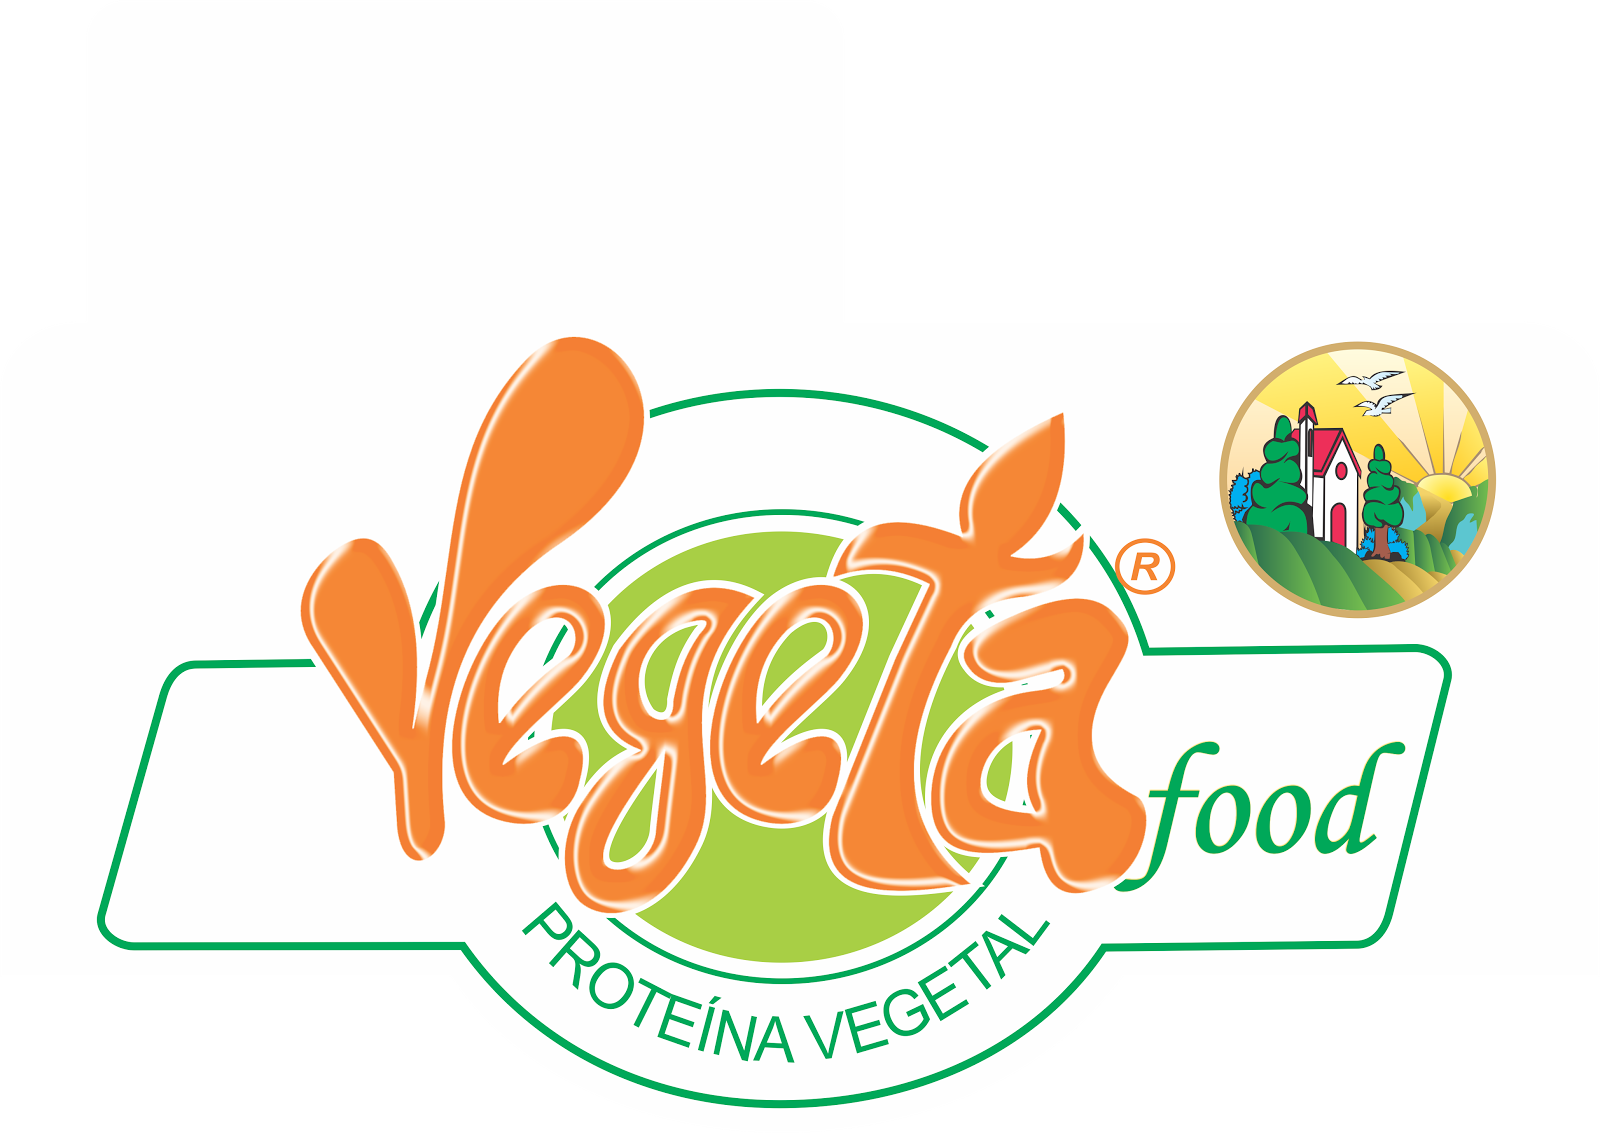 Vegeta food